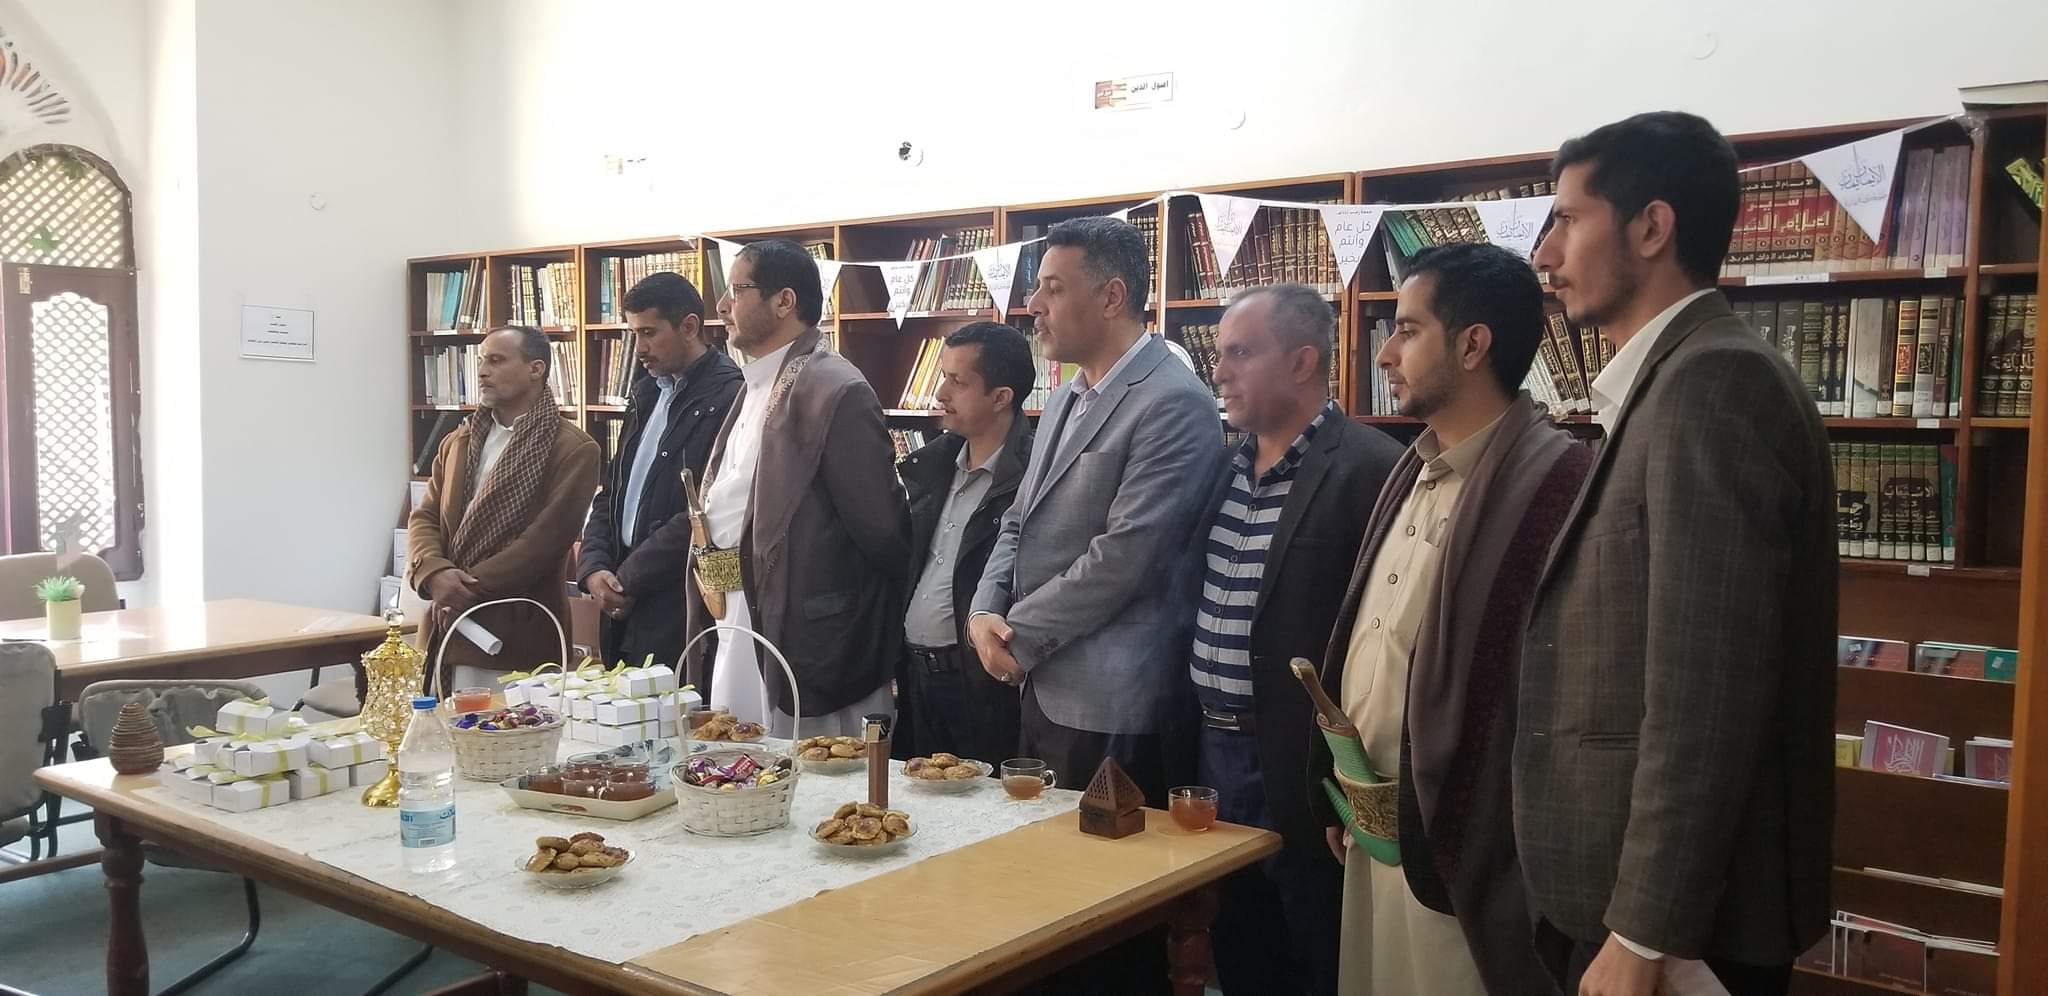 جامعة المعرفة تُحيي ذكرى دخول اليمنيين في دين الله أفواجا " جمعة رجب"